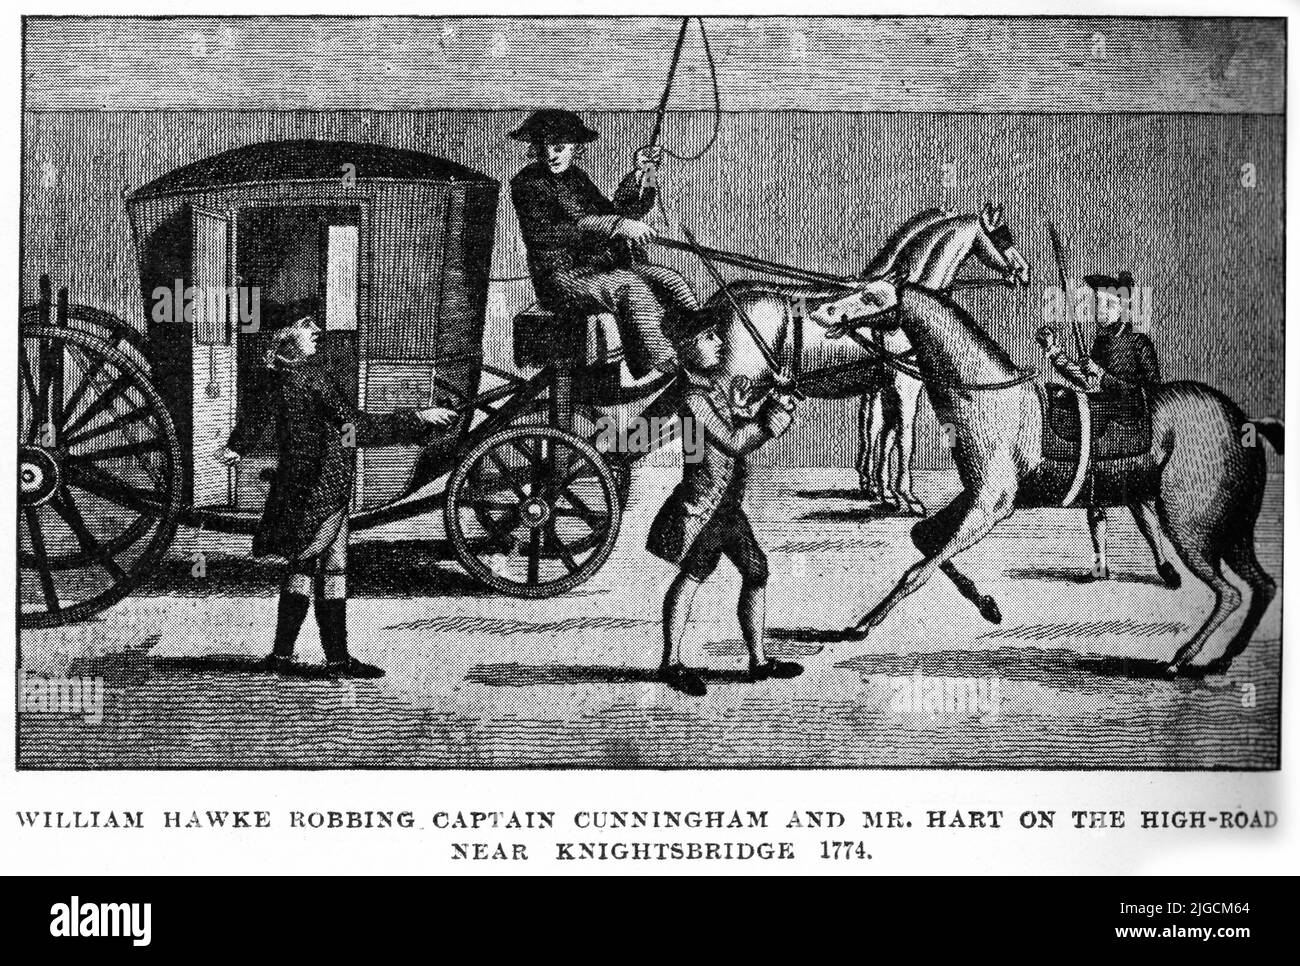 Le haut-wayman William Hawke vole le capitaine Cunningham et M. Hart près de Knightsbridge, 1774 Banque D'Images